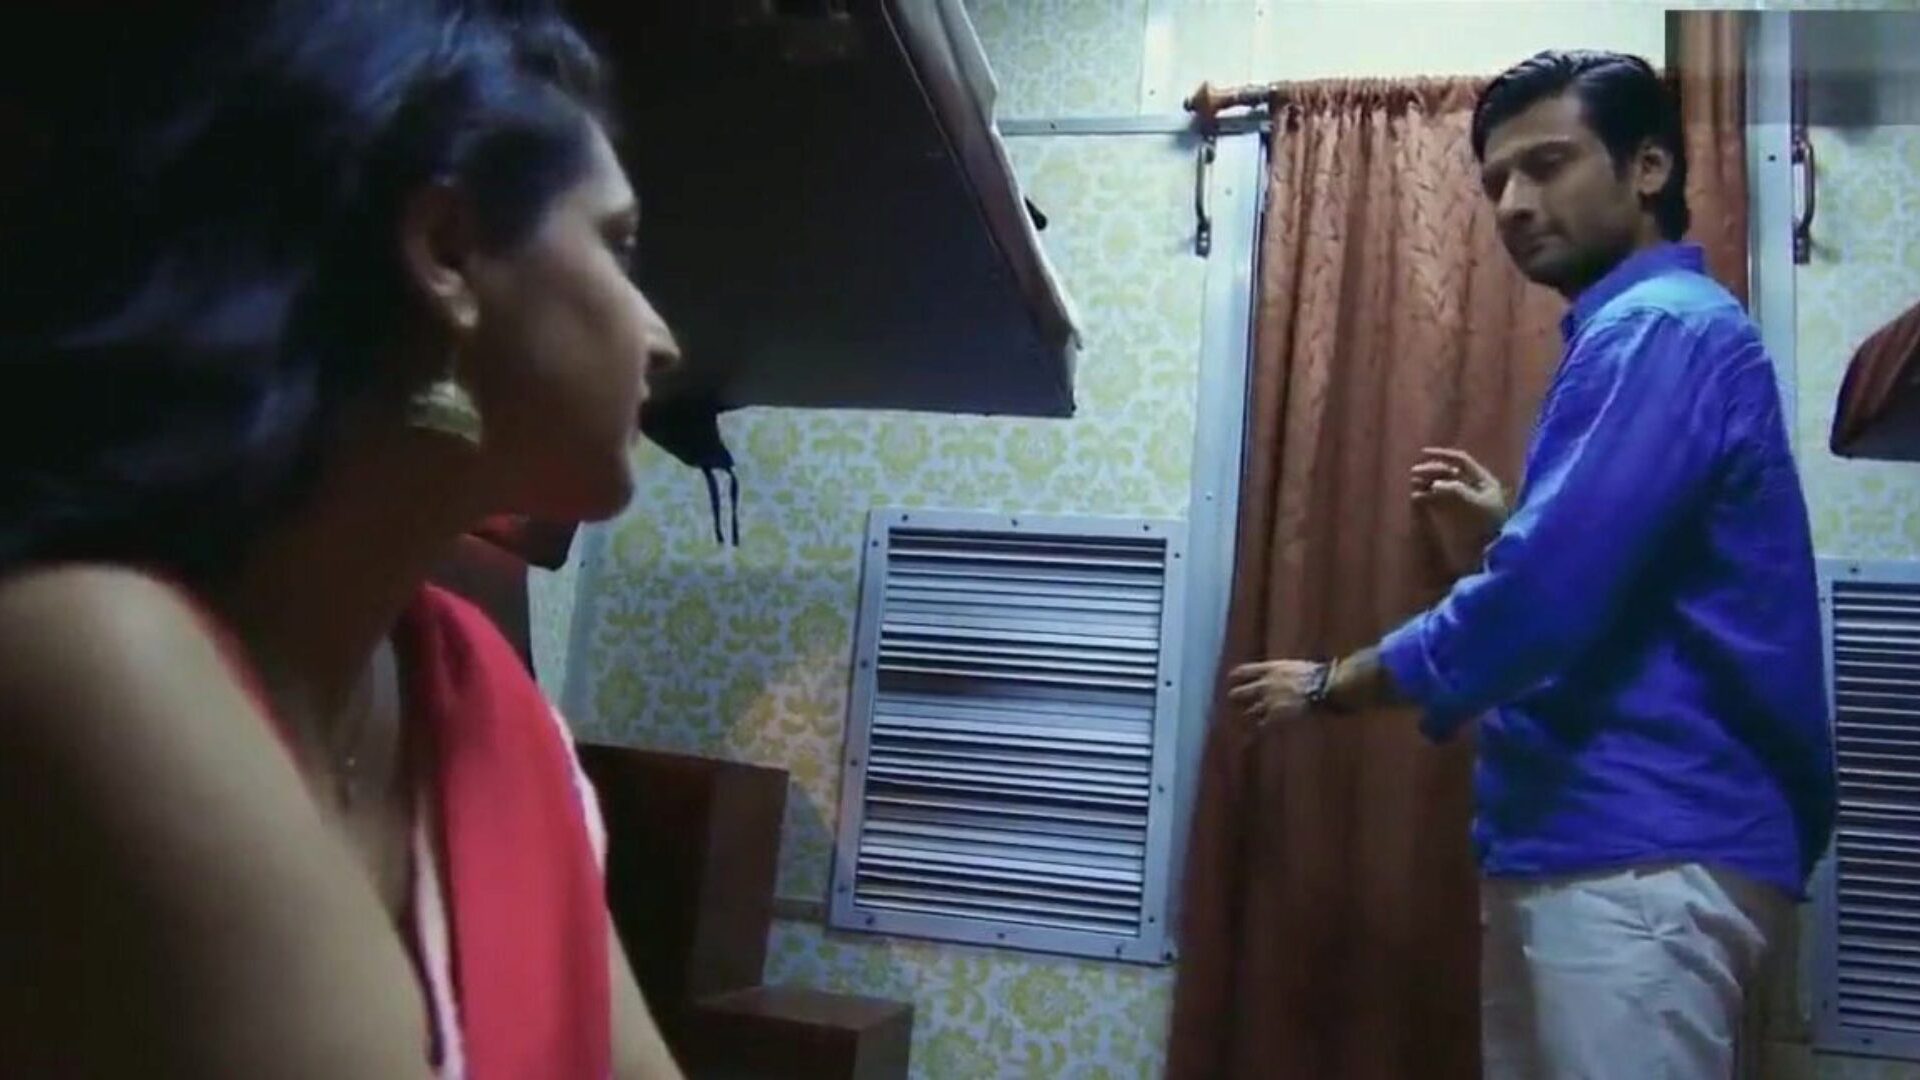 Дези женщины indraneil трахает ее боссу tadap часов Дезей женщин indraneil трахает ее эпизод tadap босса на xhamster - окончательный выбор бесплатной азиатской индийского HD злостной сцены порно трубка кино